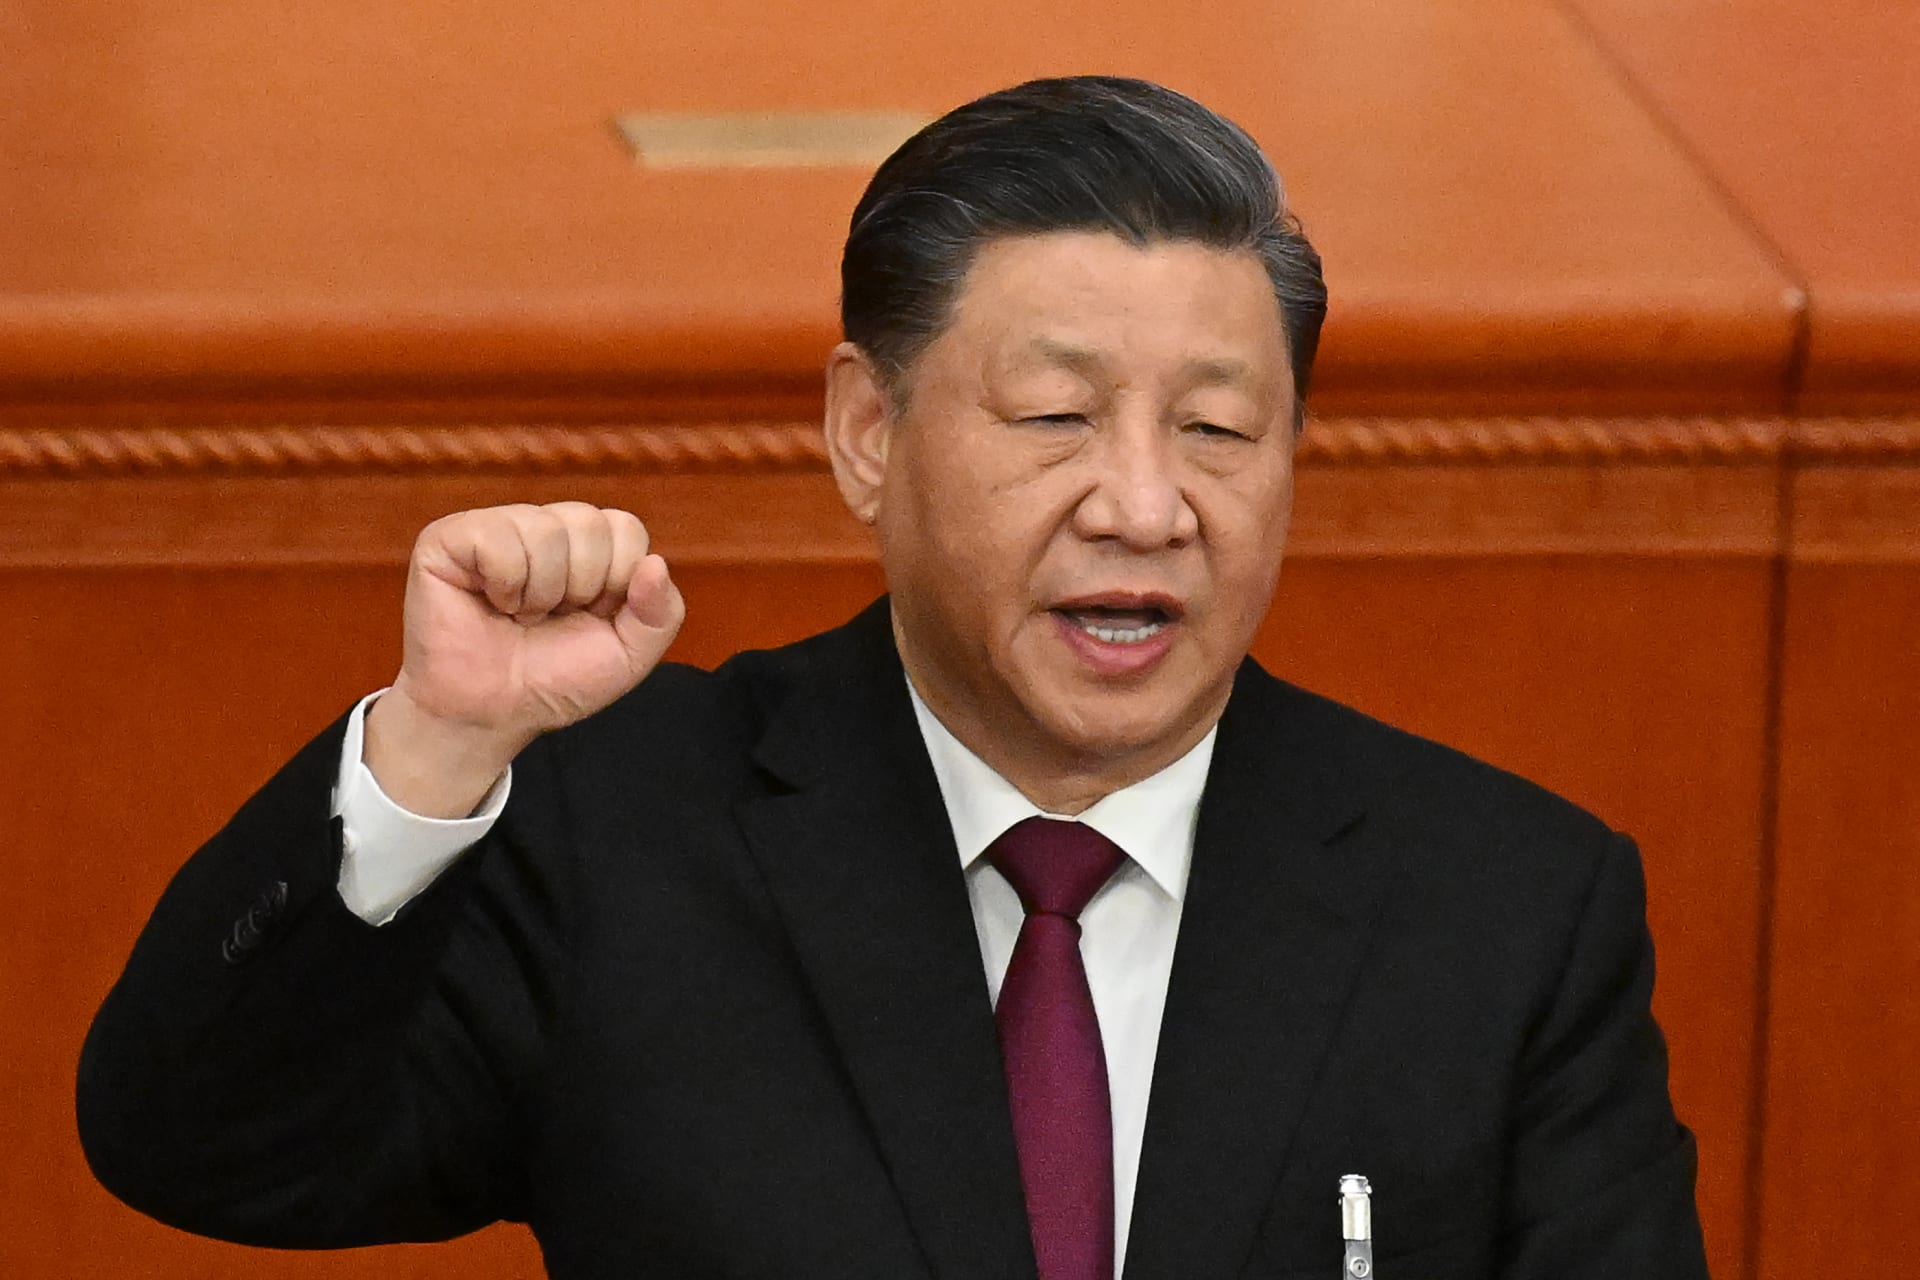 الرئيس الصيني: التسوية السياسية هي الطريق الوحيد لحل أزمة أوكرانيا